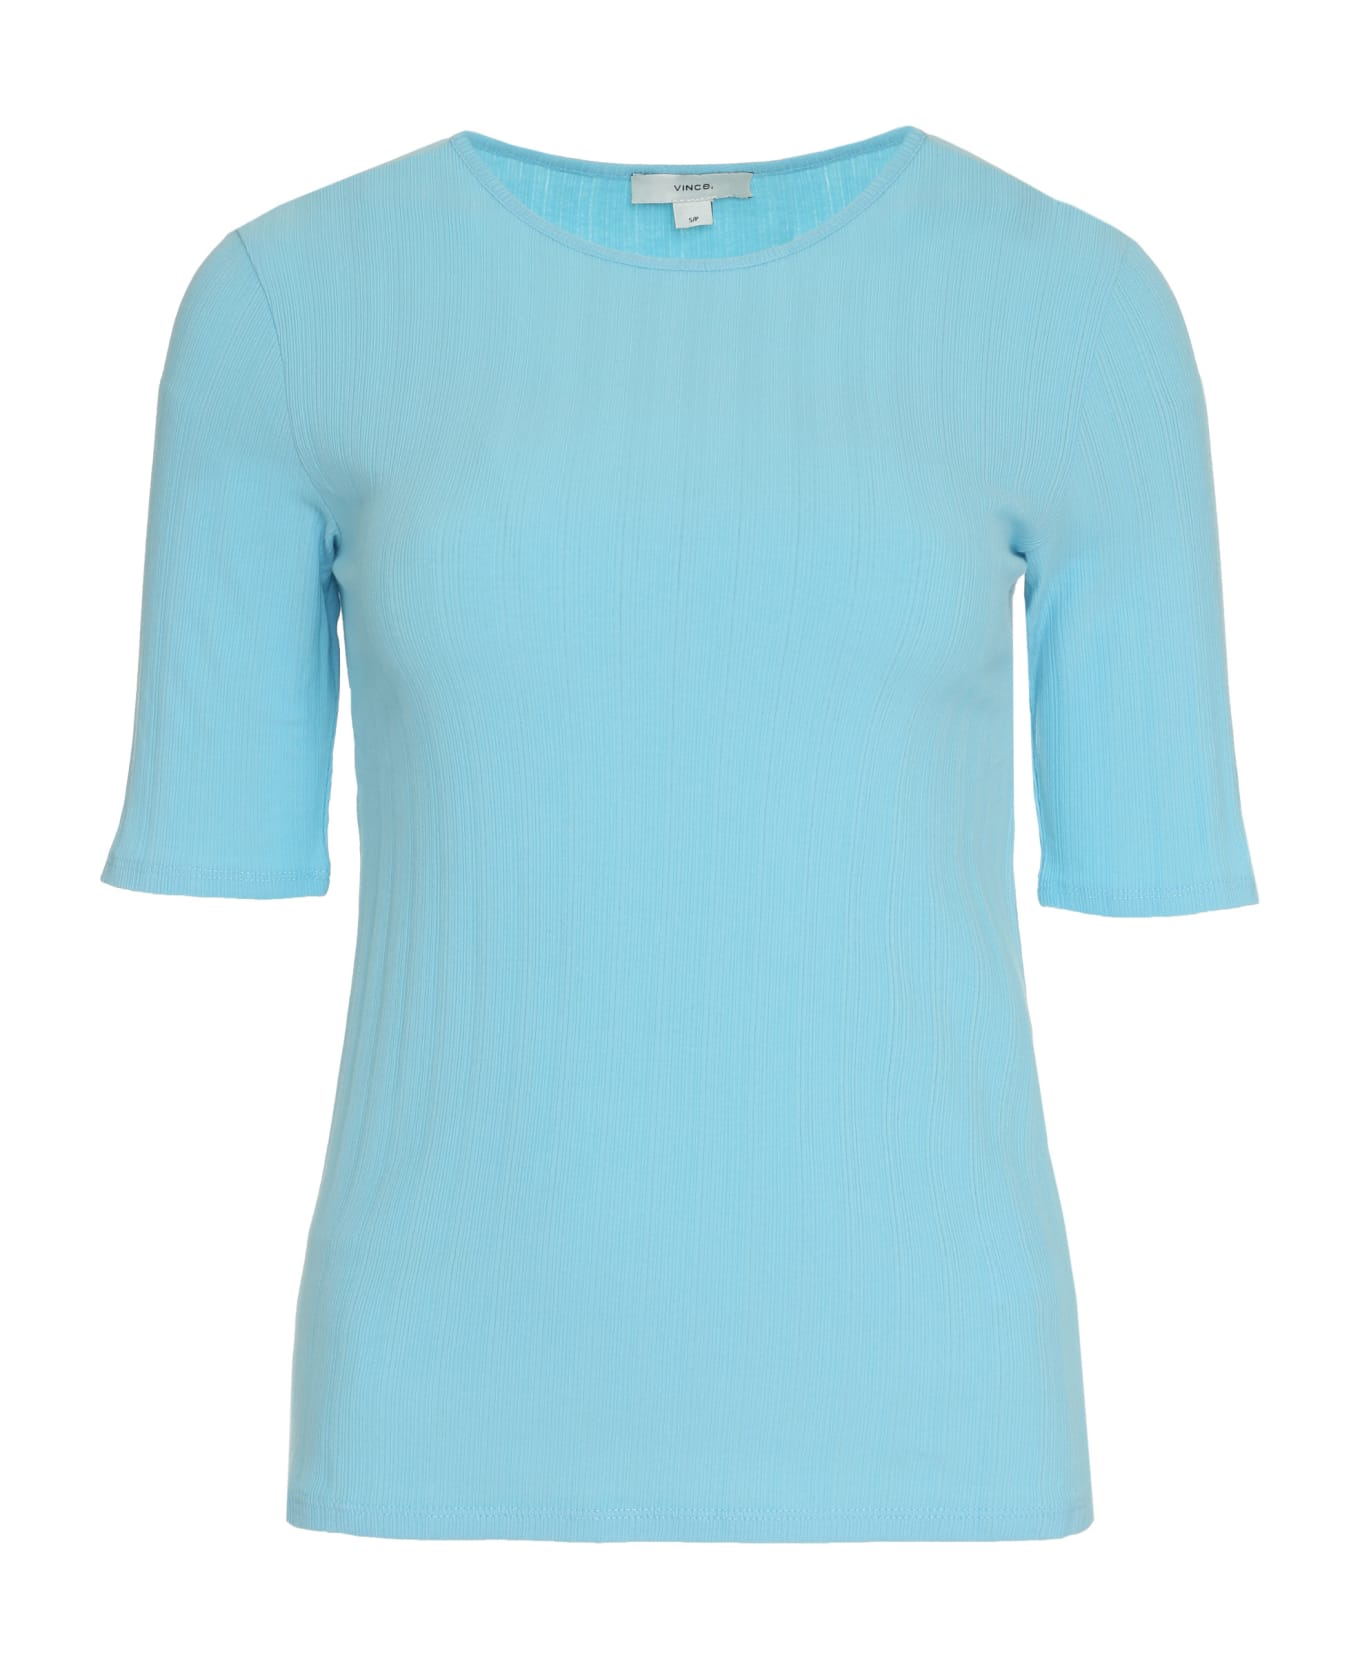 Vince Cotton Knit T-shirt - Light Blue Tシャツ